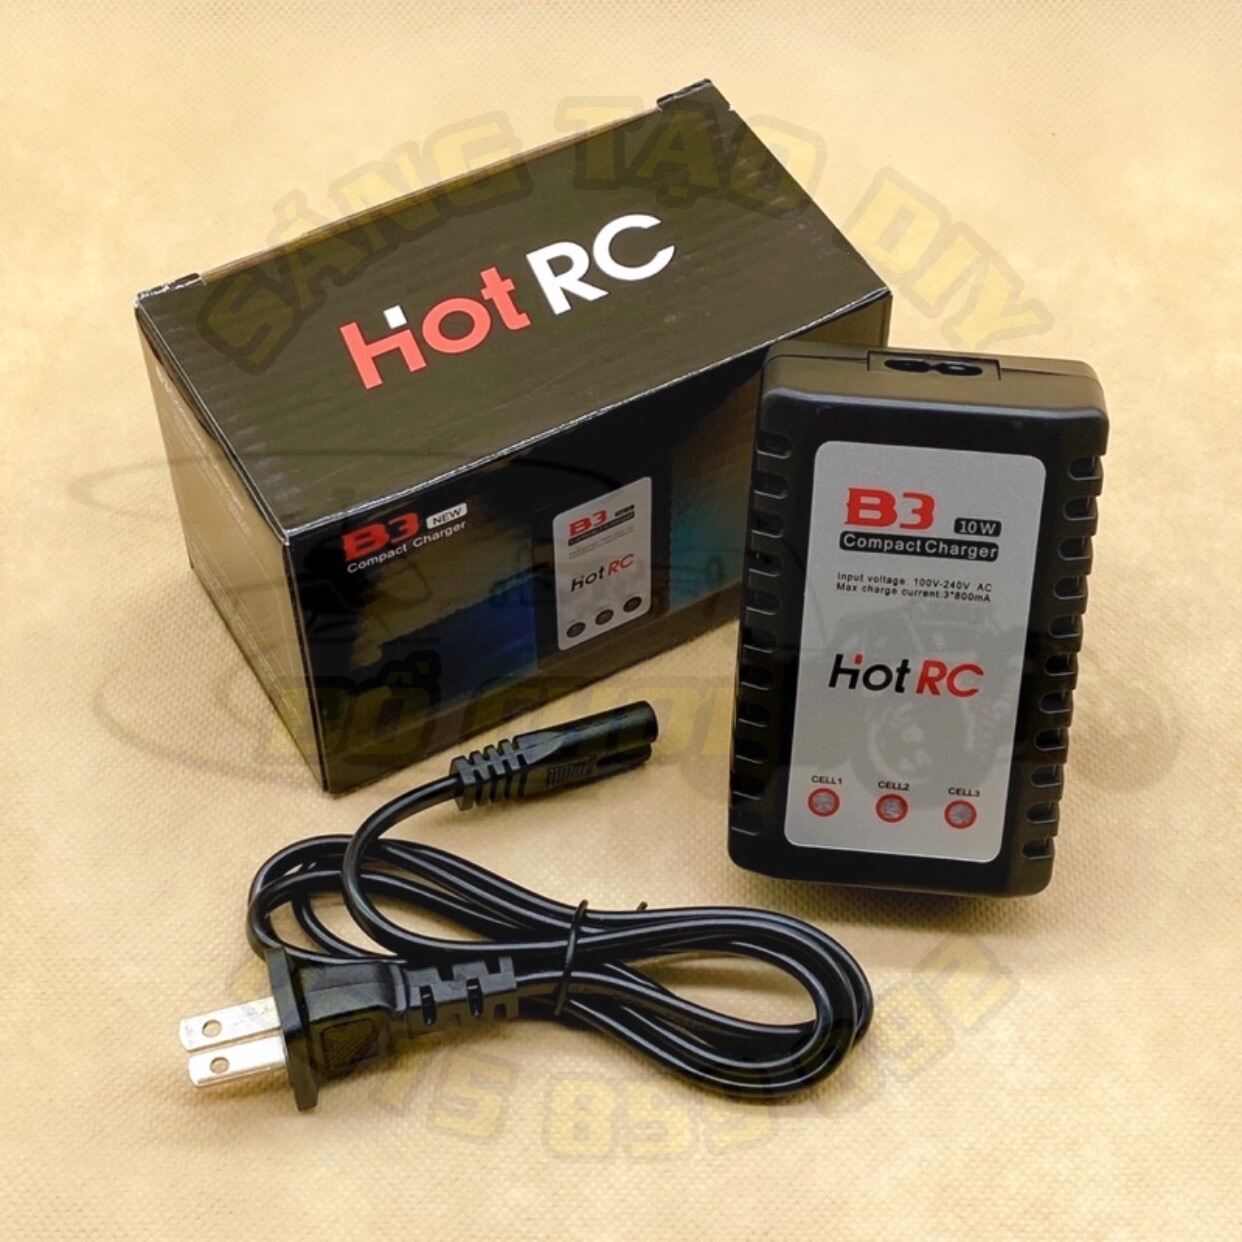 Bộ sạc B3 Hot RC chuẩn 10W, cân bằng điện áp các cell pin. Dùng để sạc pin Lipo 2S - 7.4V, 3S - 11.1V